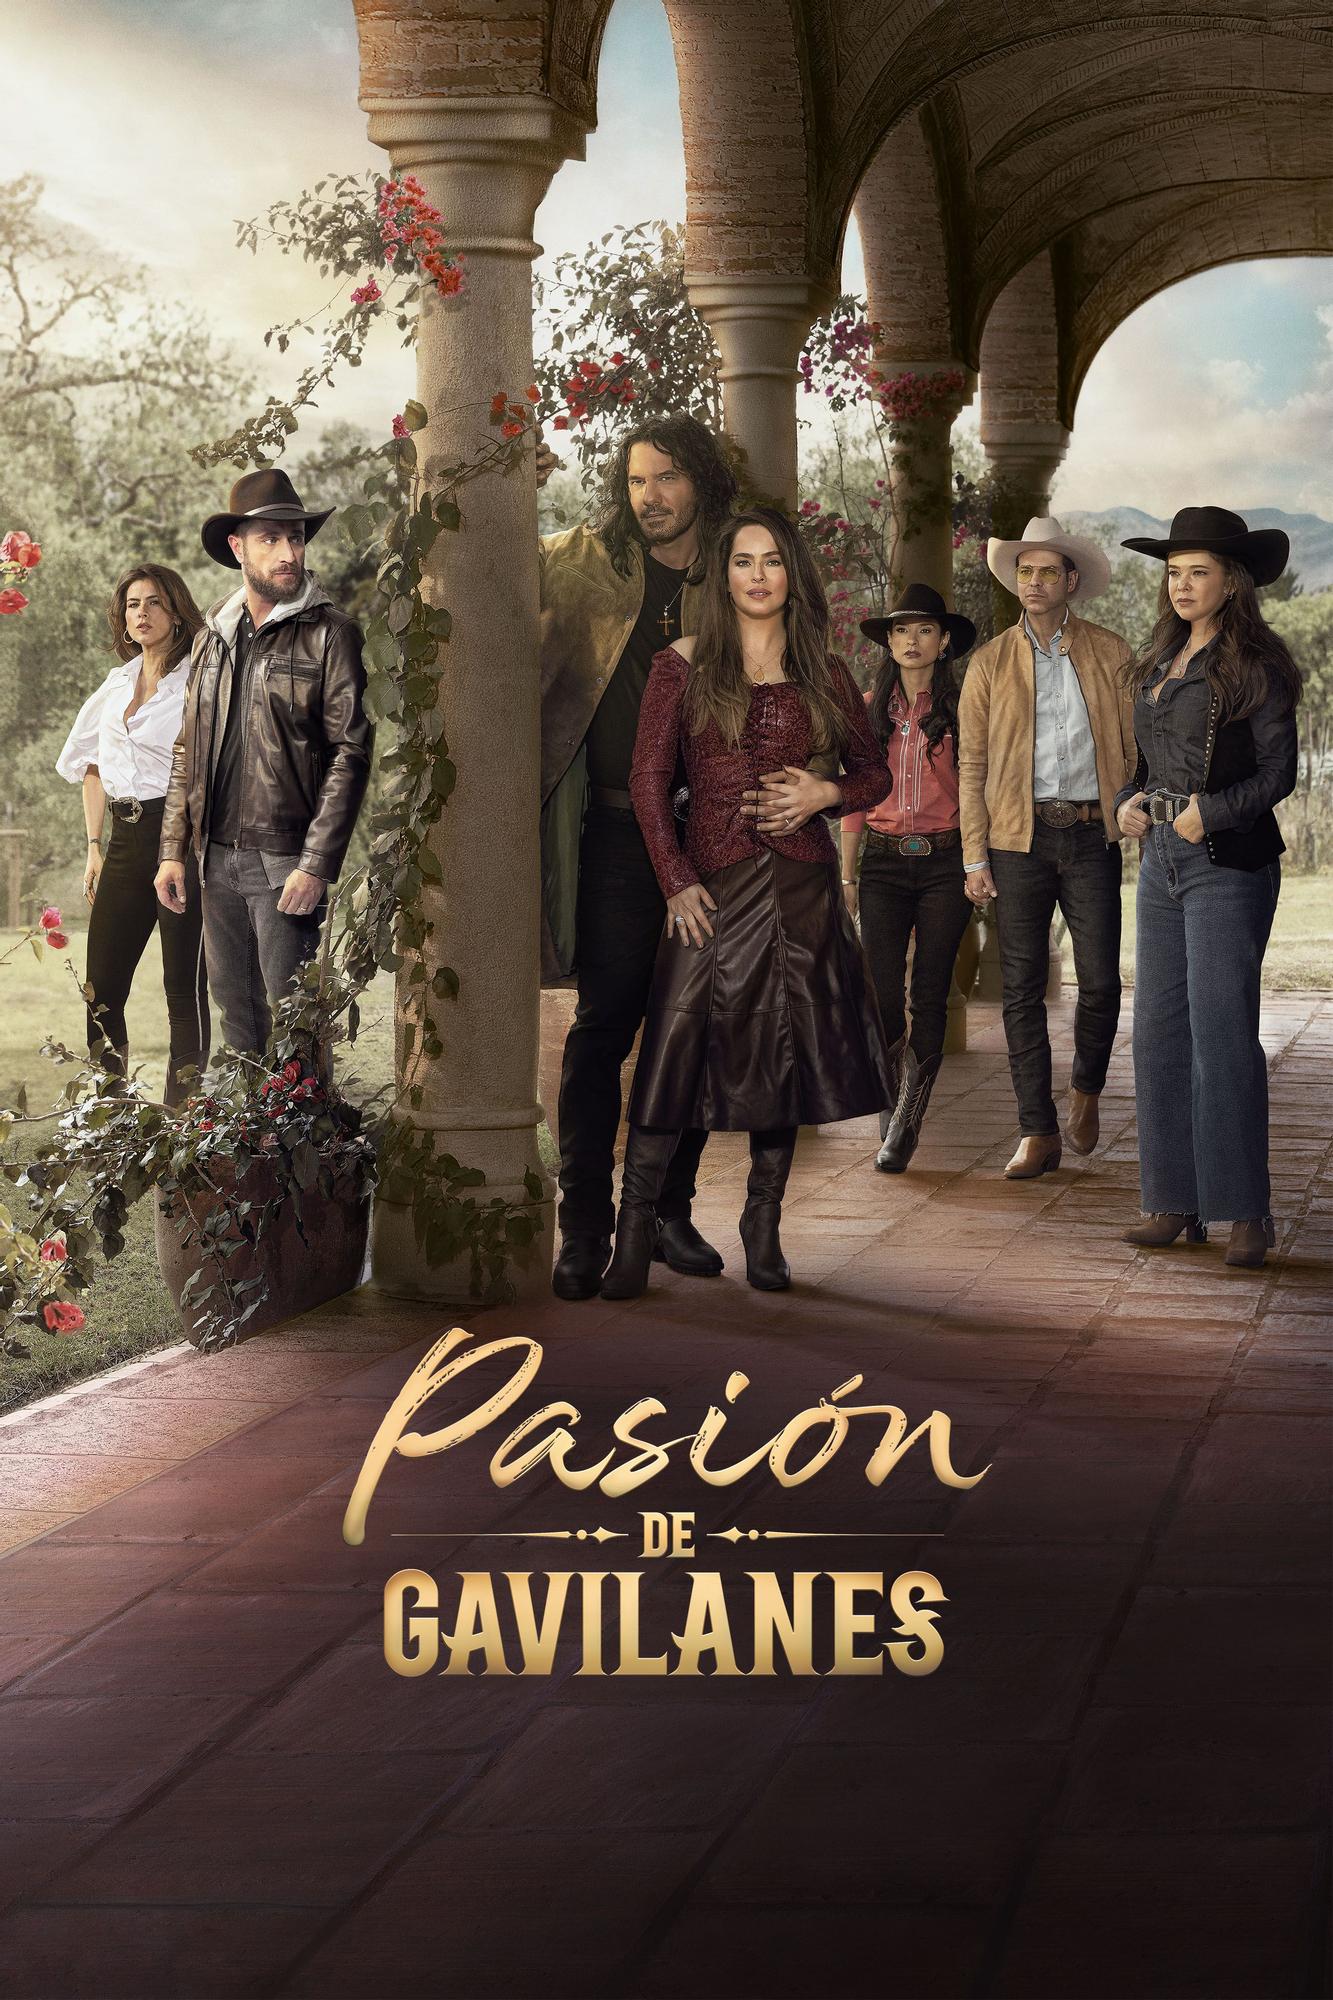 Pasion de Gavilanes se emitirá en exclusiva en Telecinco.